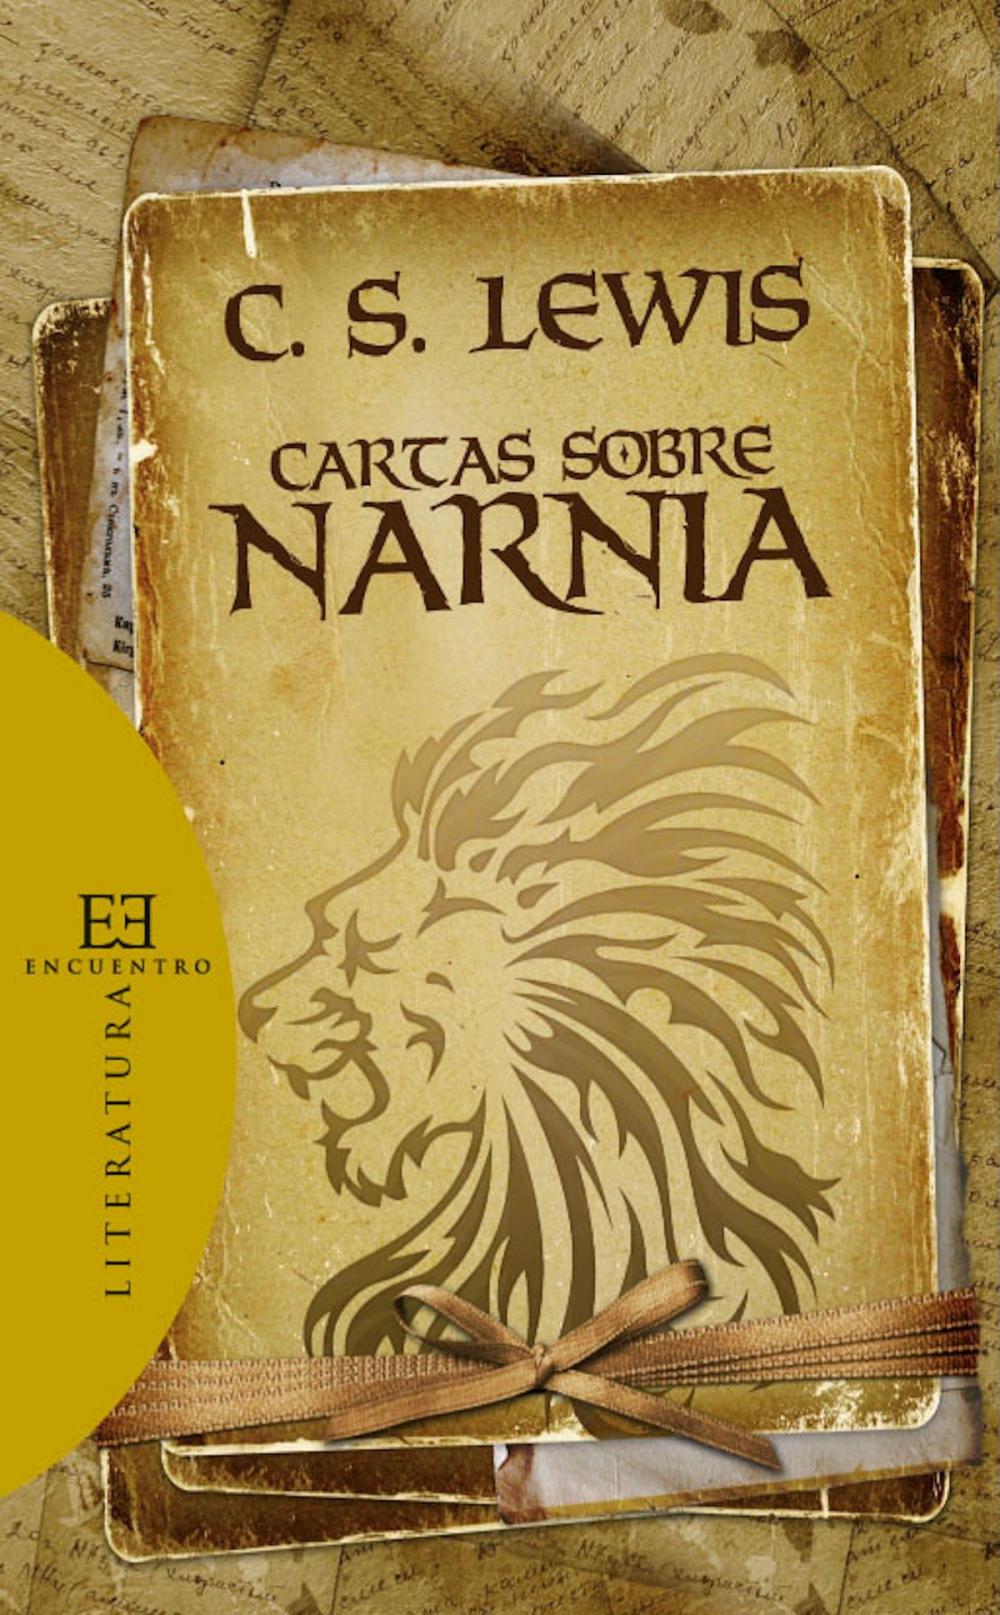 Big bigCover of Cartas sobre Narnia